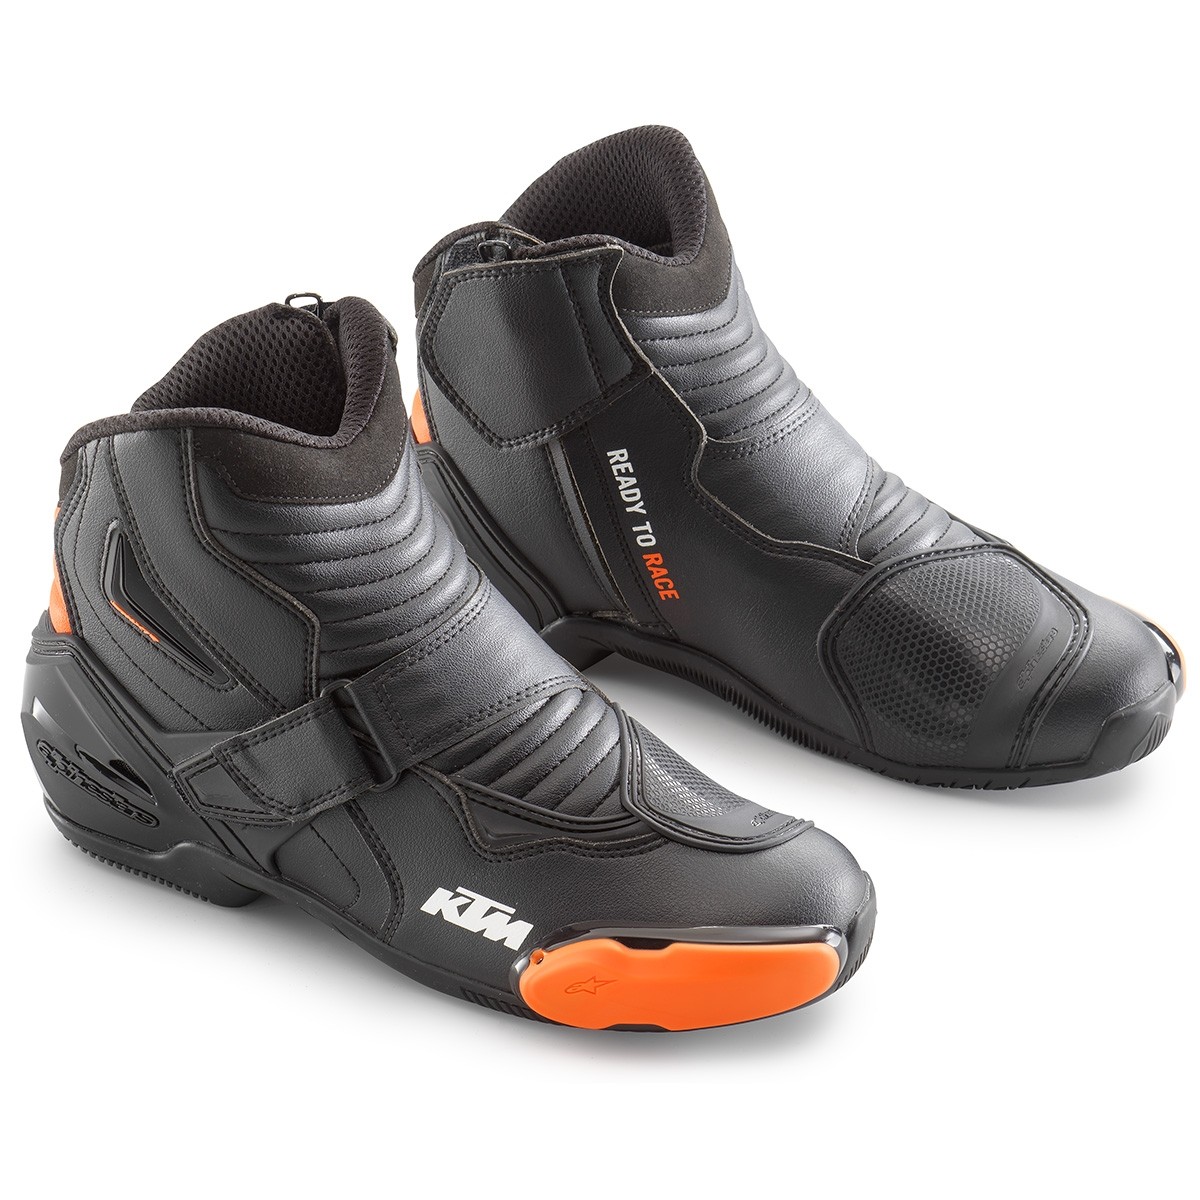 Botas KTM Alpinestars S-MX 1 R Boots por 134€ en Almería, Granada, Málaga y  Murcia - Tienda oficial de motociclismo. Además disponemos de otros tipos  de artículos omologados perfectos para ti y